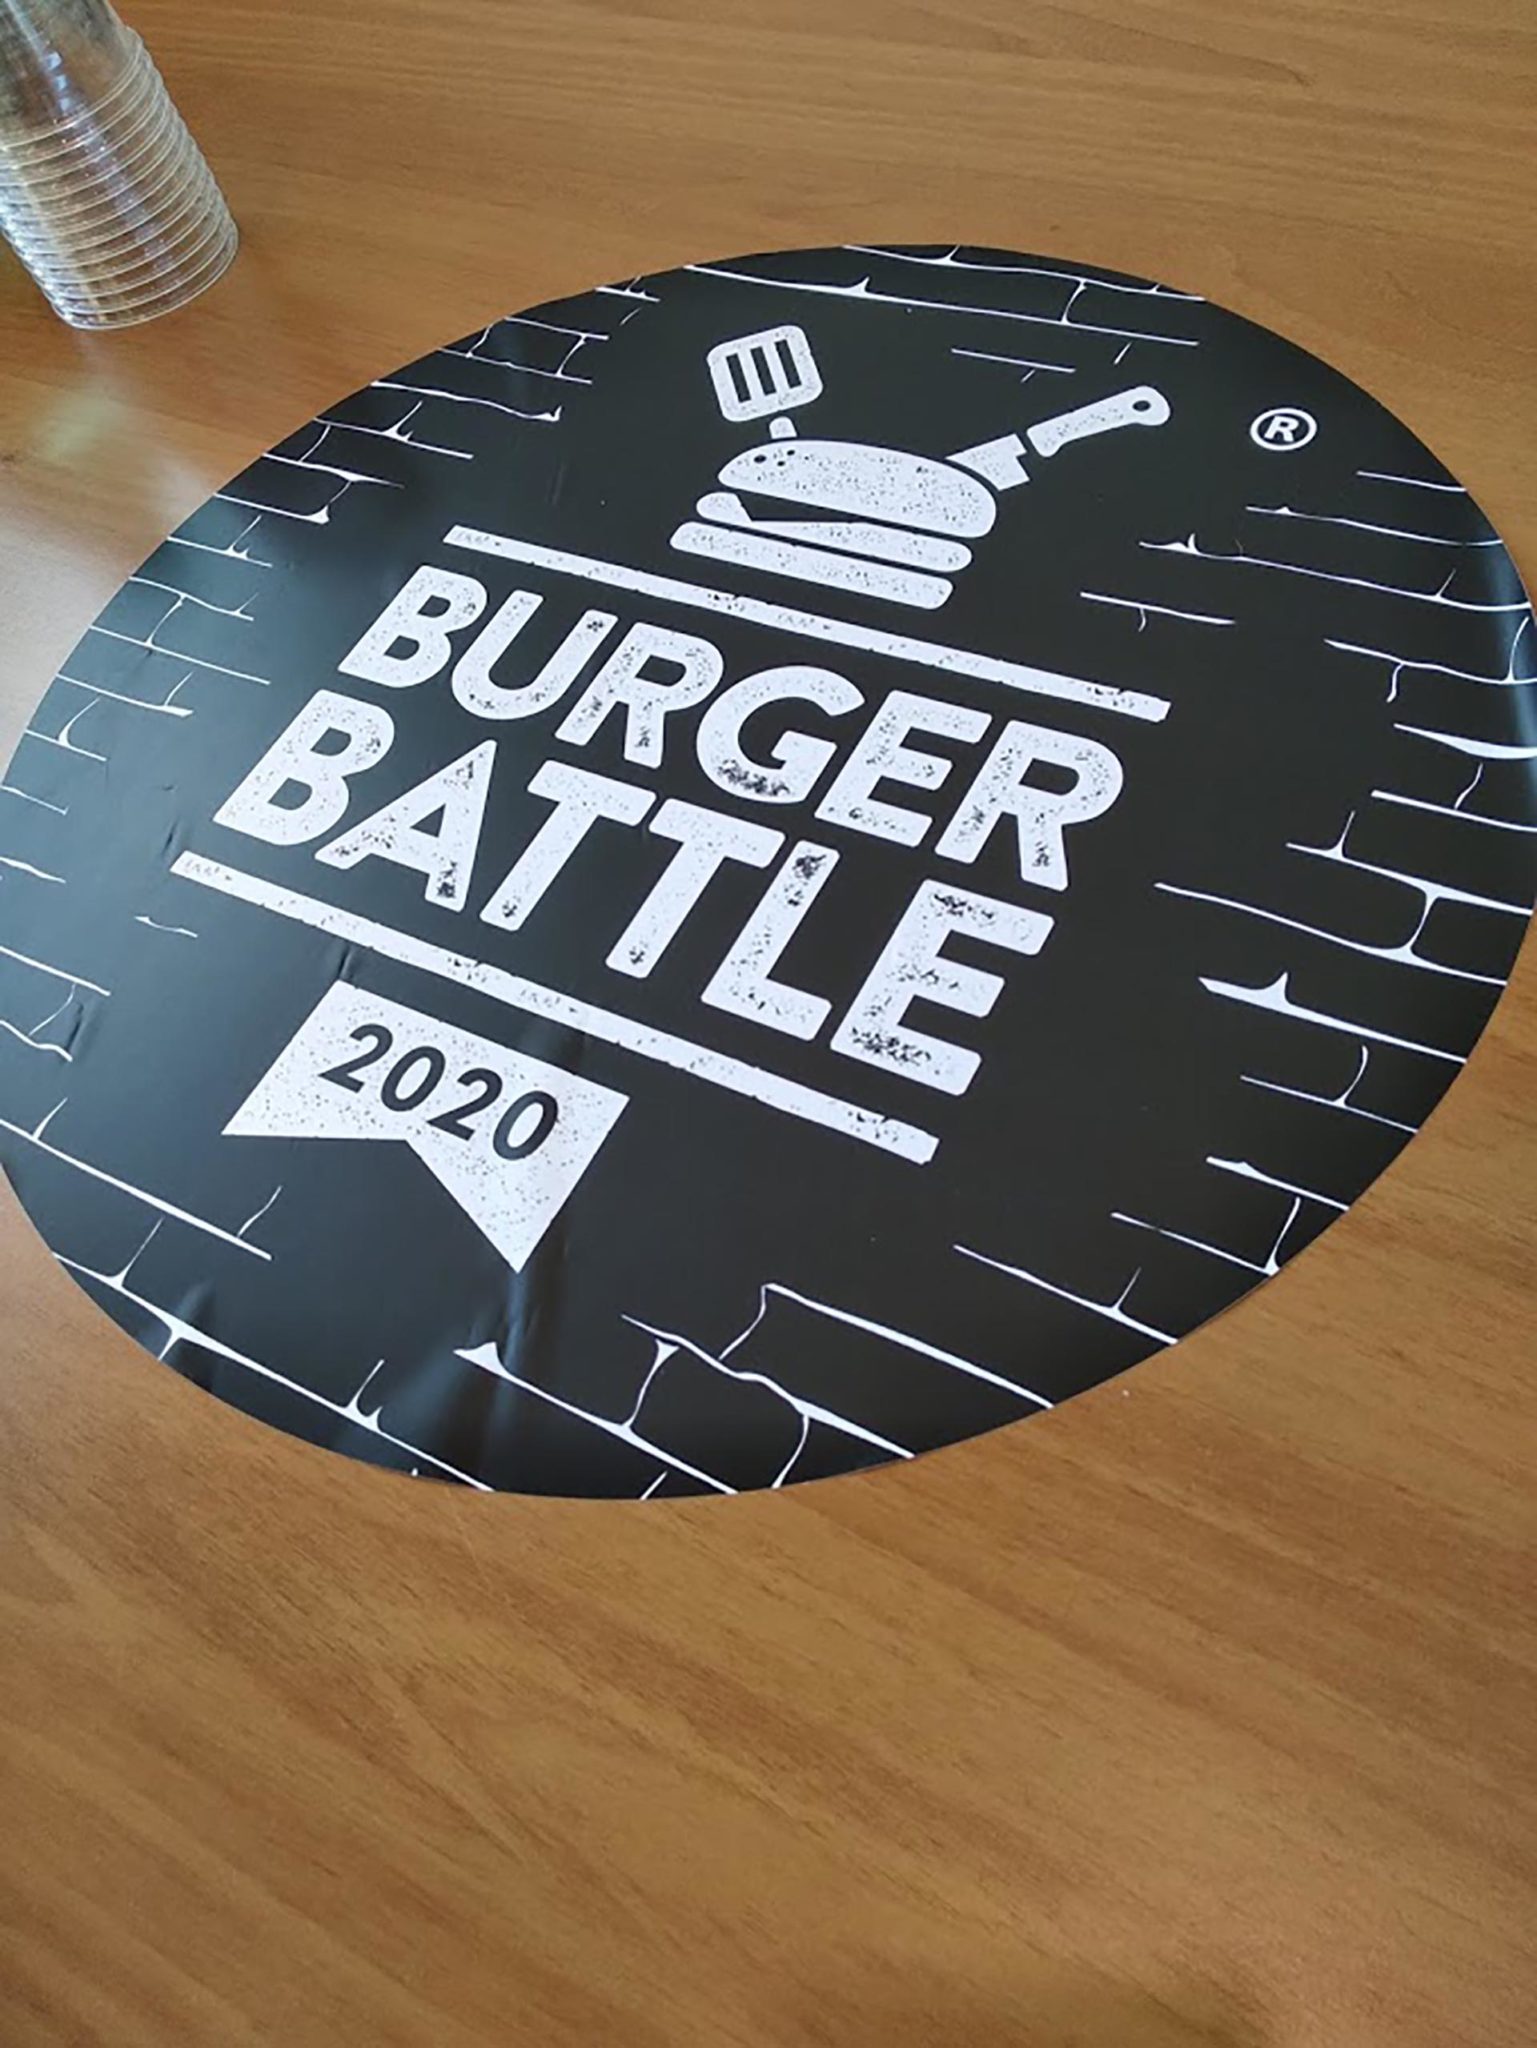 burger battle